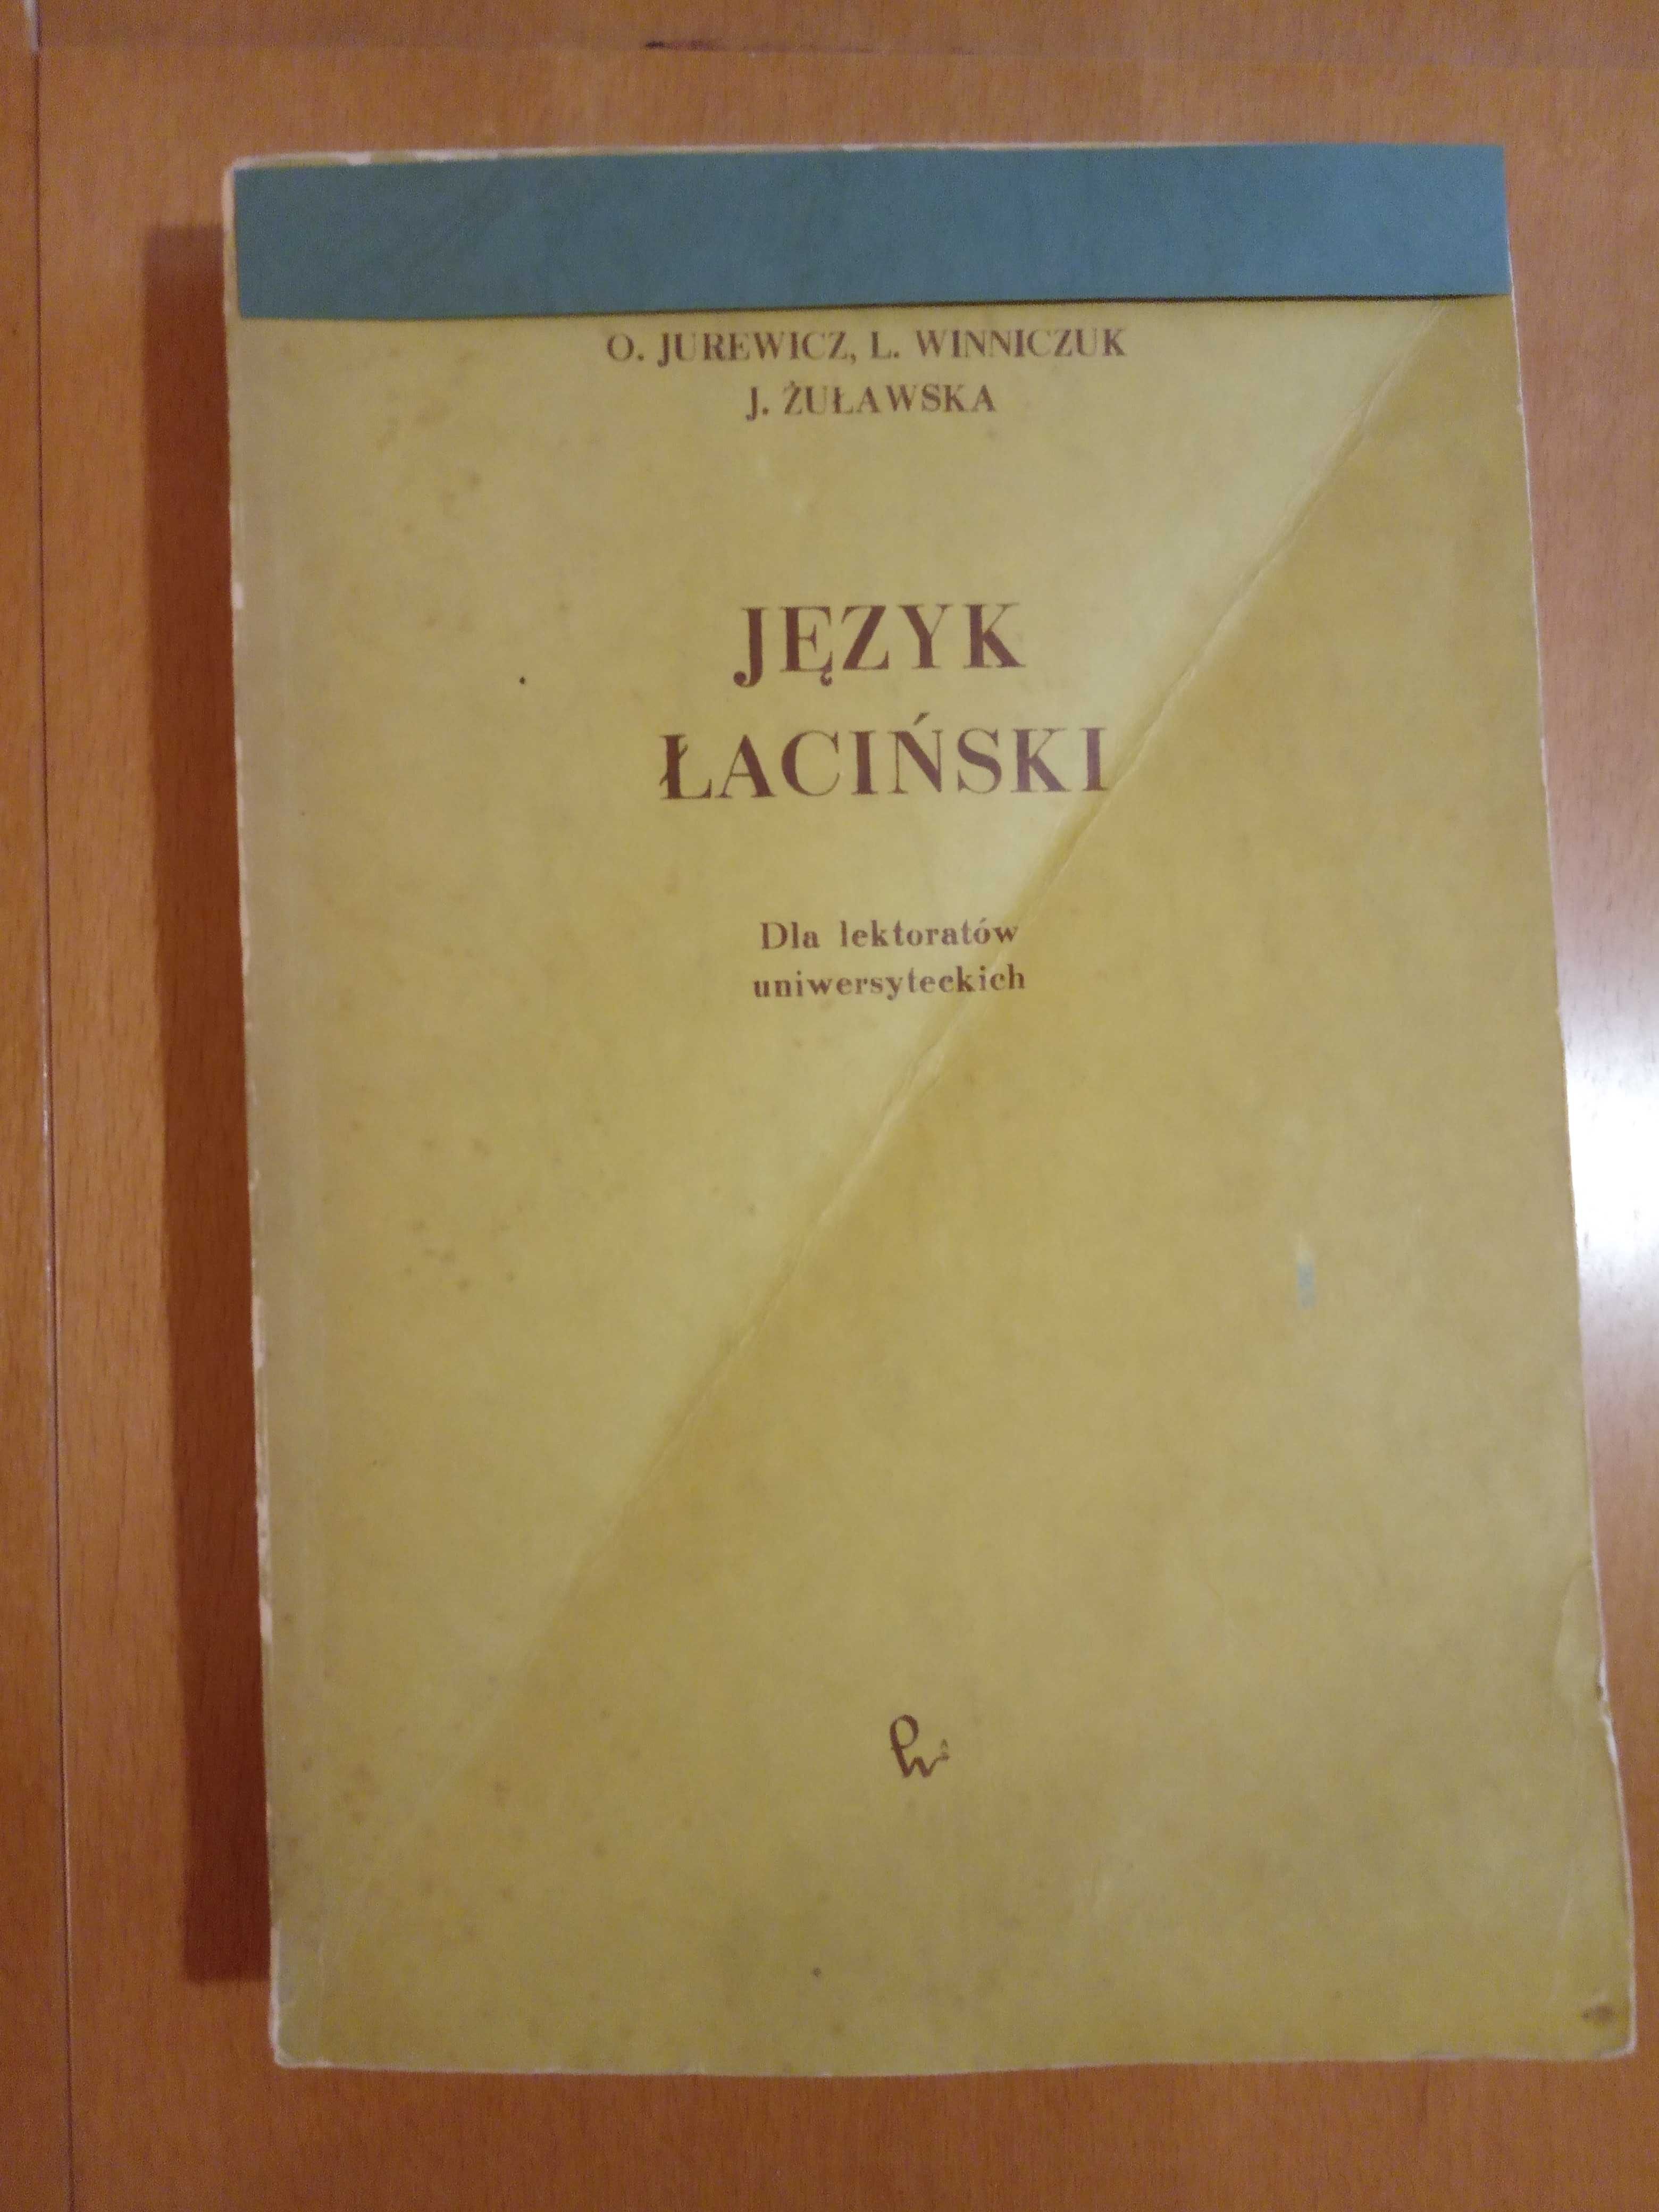 O. Jurewicz, L. Winniczuk, J. Żuławska Język łaciński